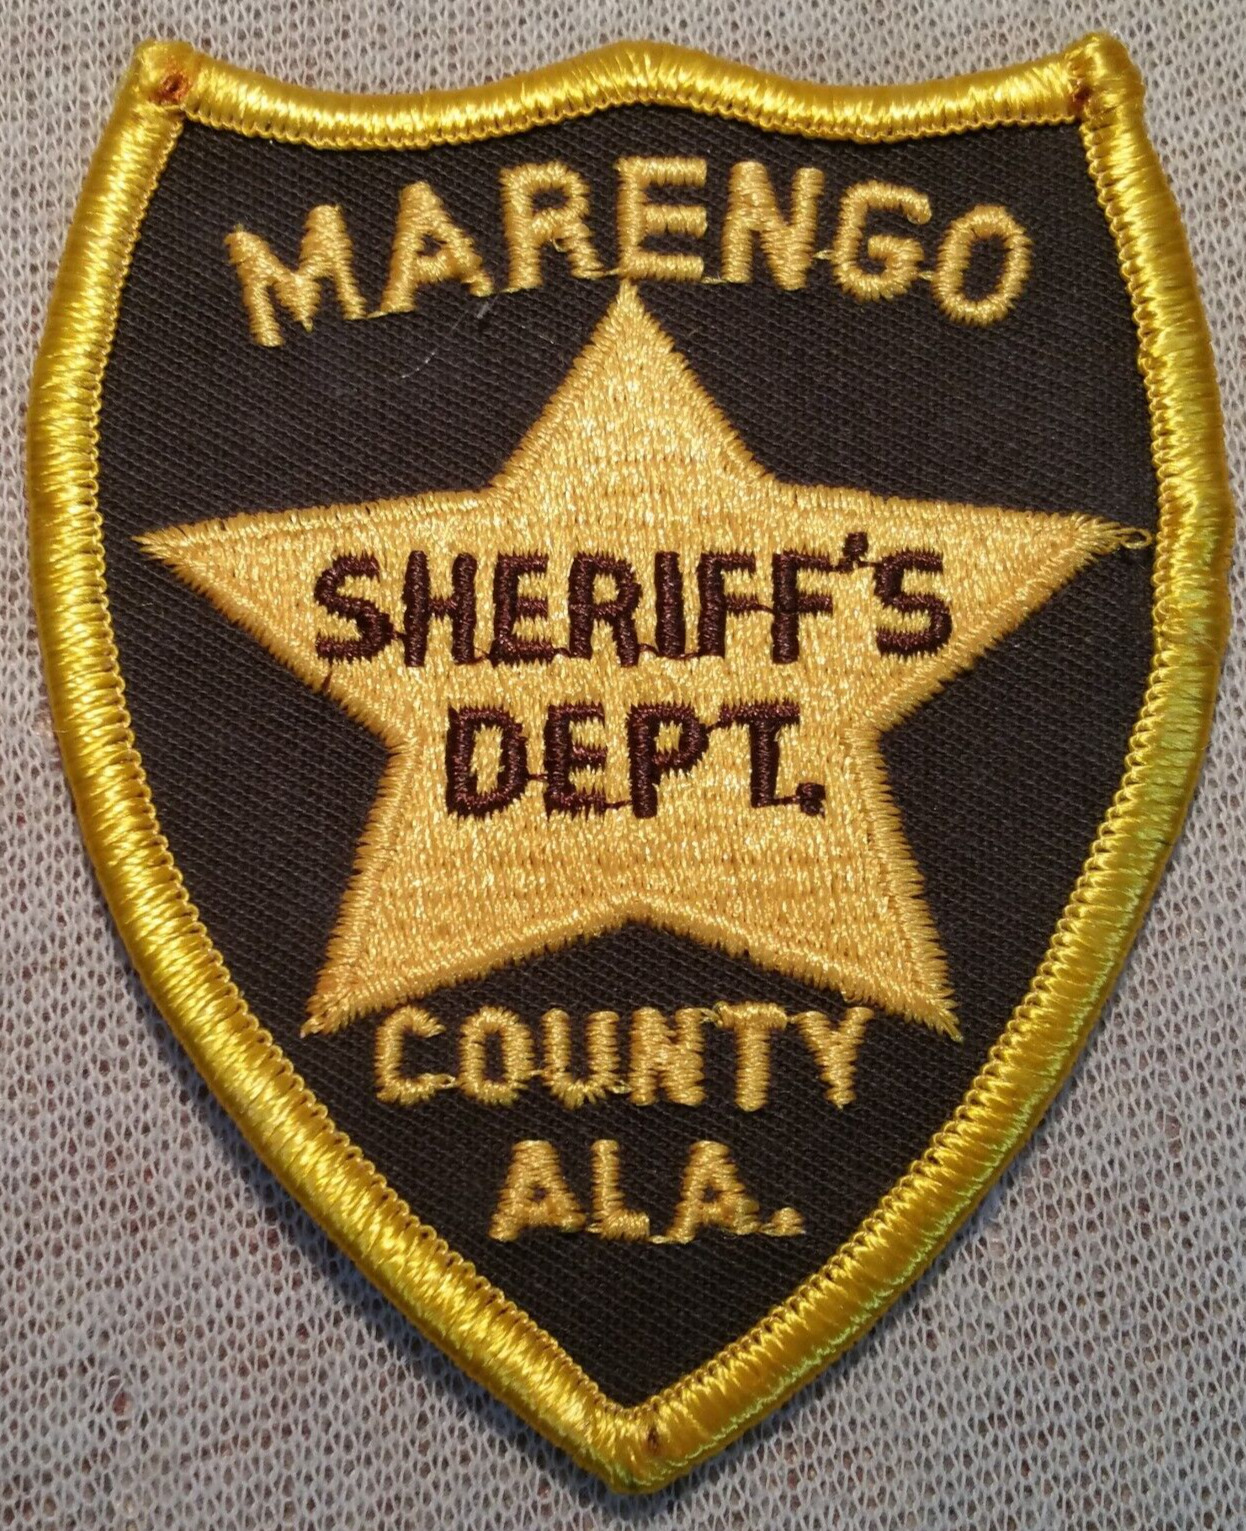 AL Marengo County Alabama Sheriff Patch